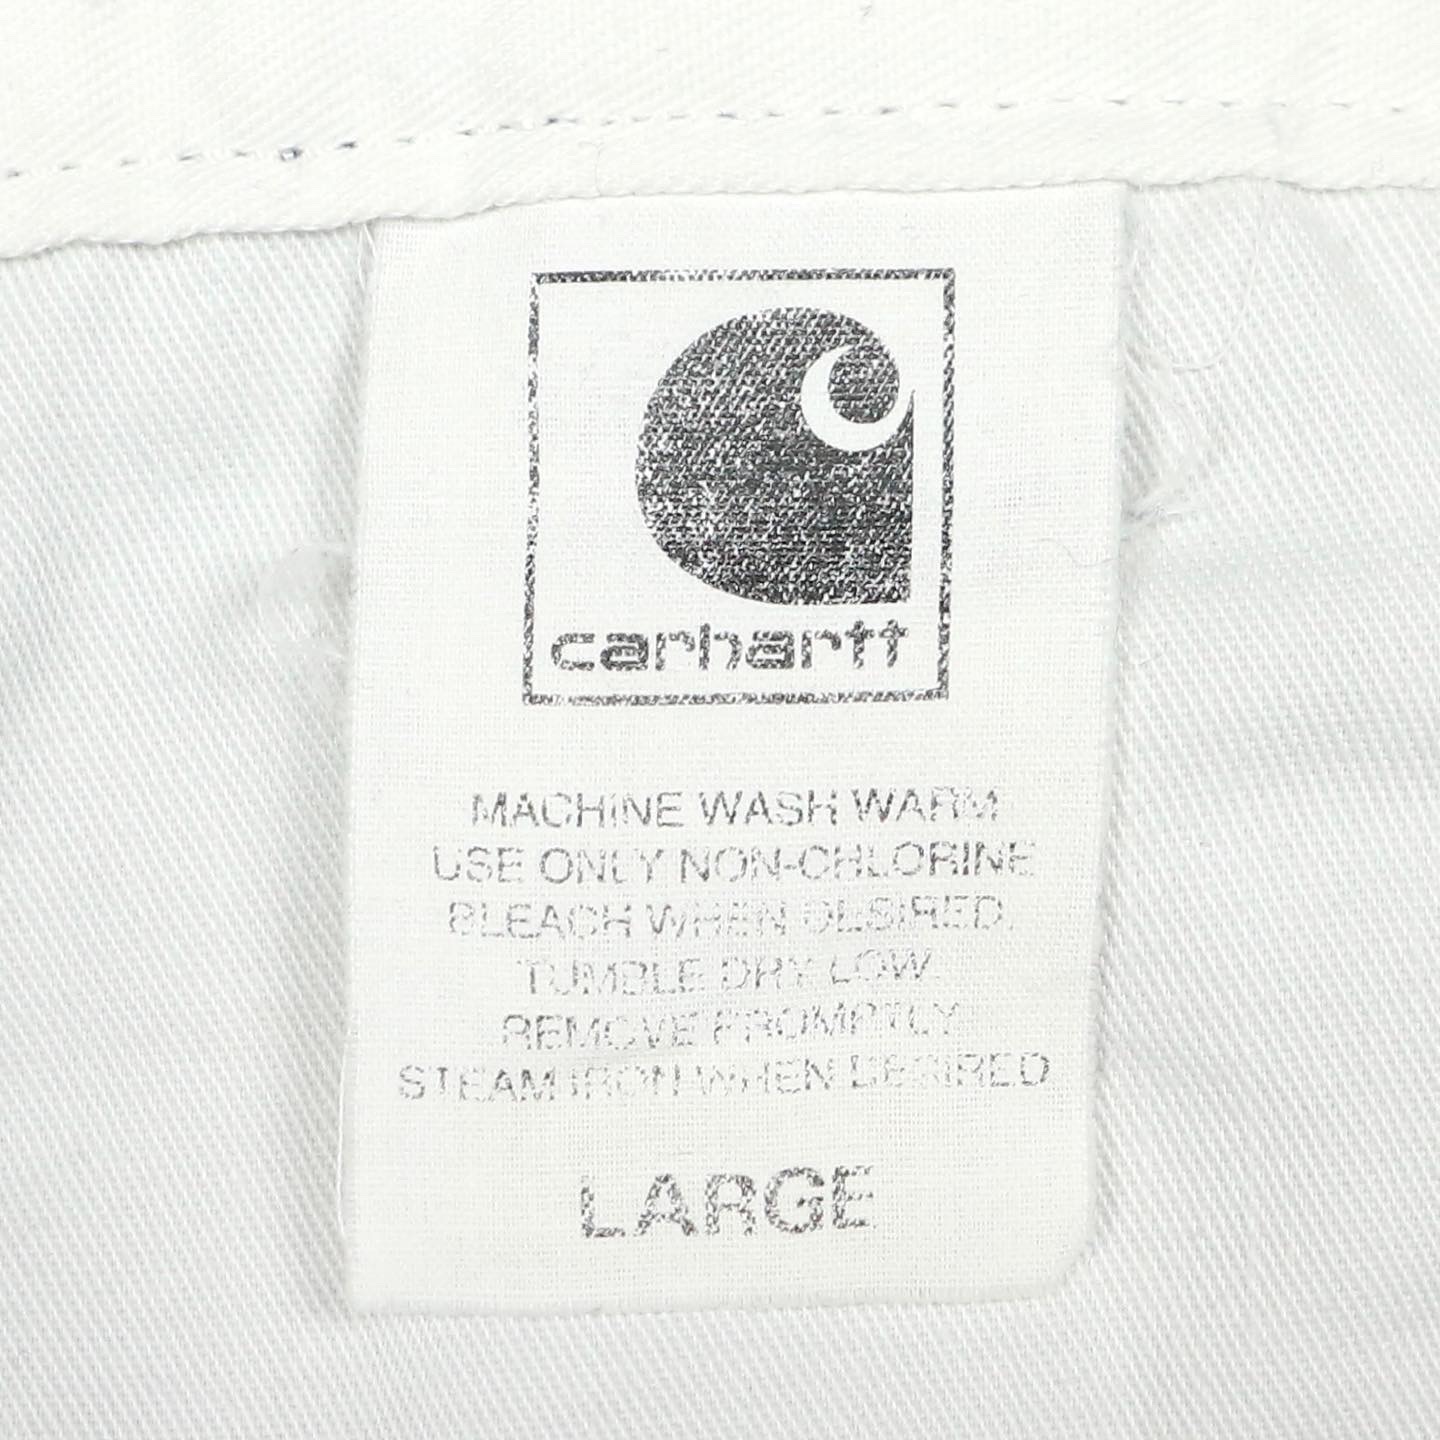 Carhartt Work Shorts Size 30